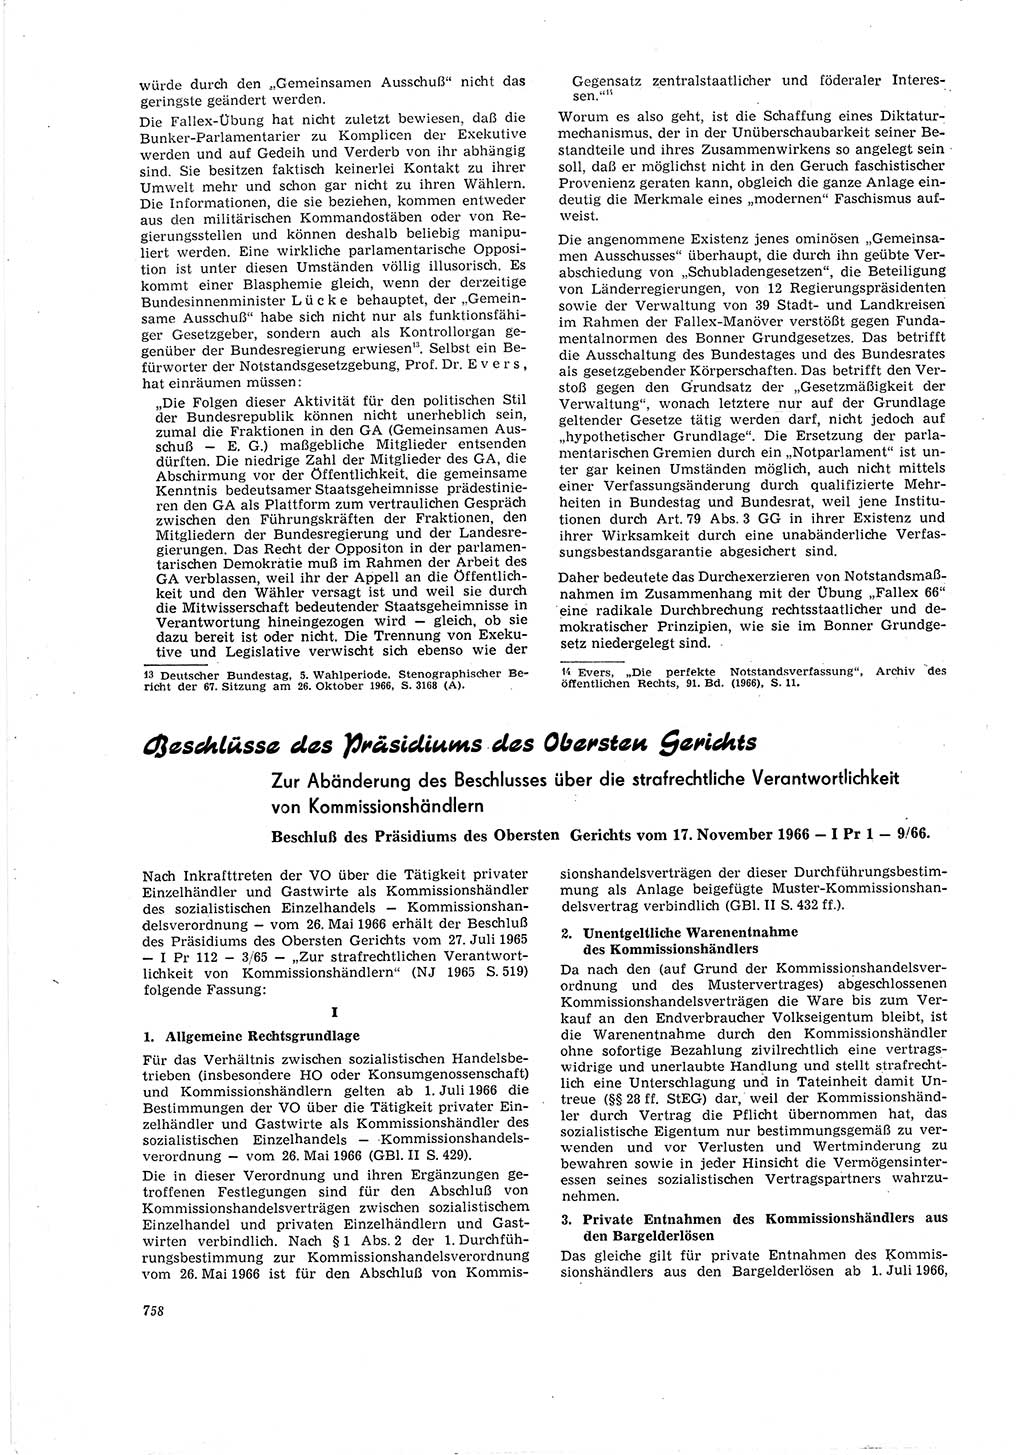 Neue Justiz (NJ), Zeitschrift für Recht und Rechtswissenschaft [Deutsche Demokratische Republik (DDR)], 20. Jahrgang 1966, Seite 758 (NJ DDR 1966, S. 758)